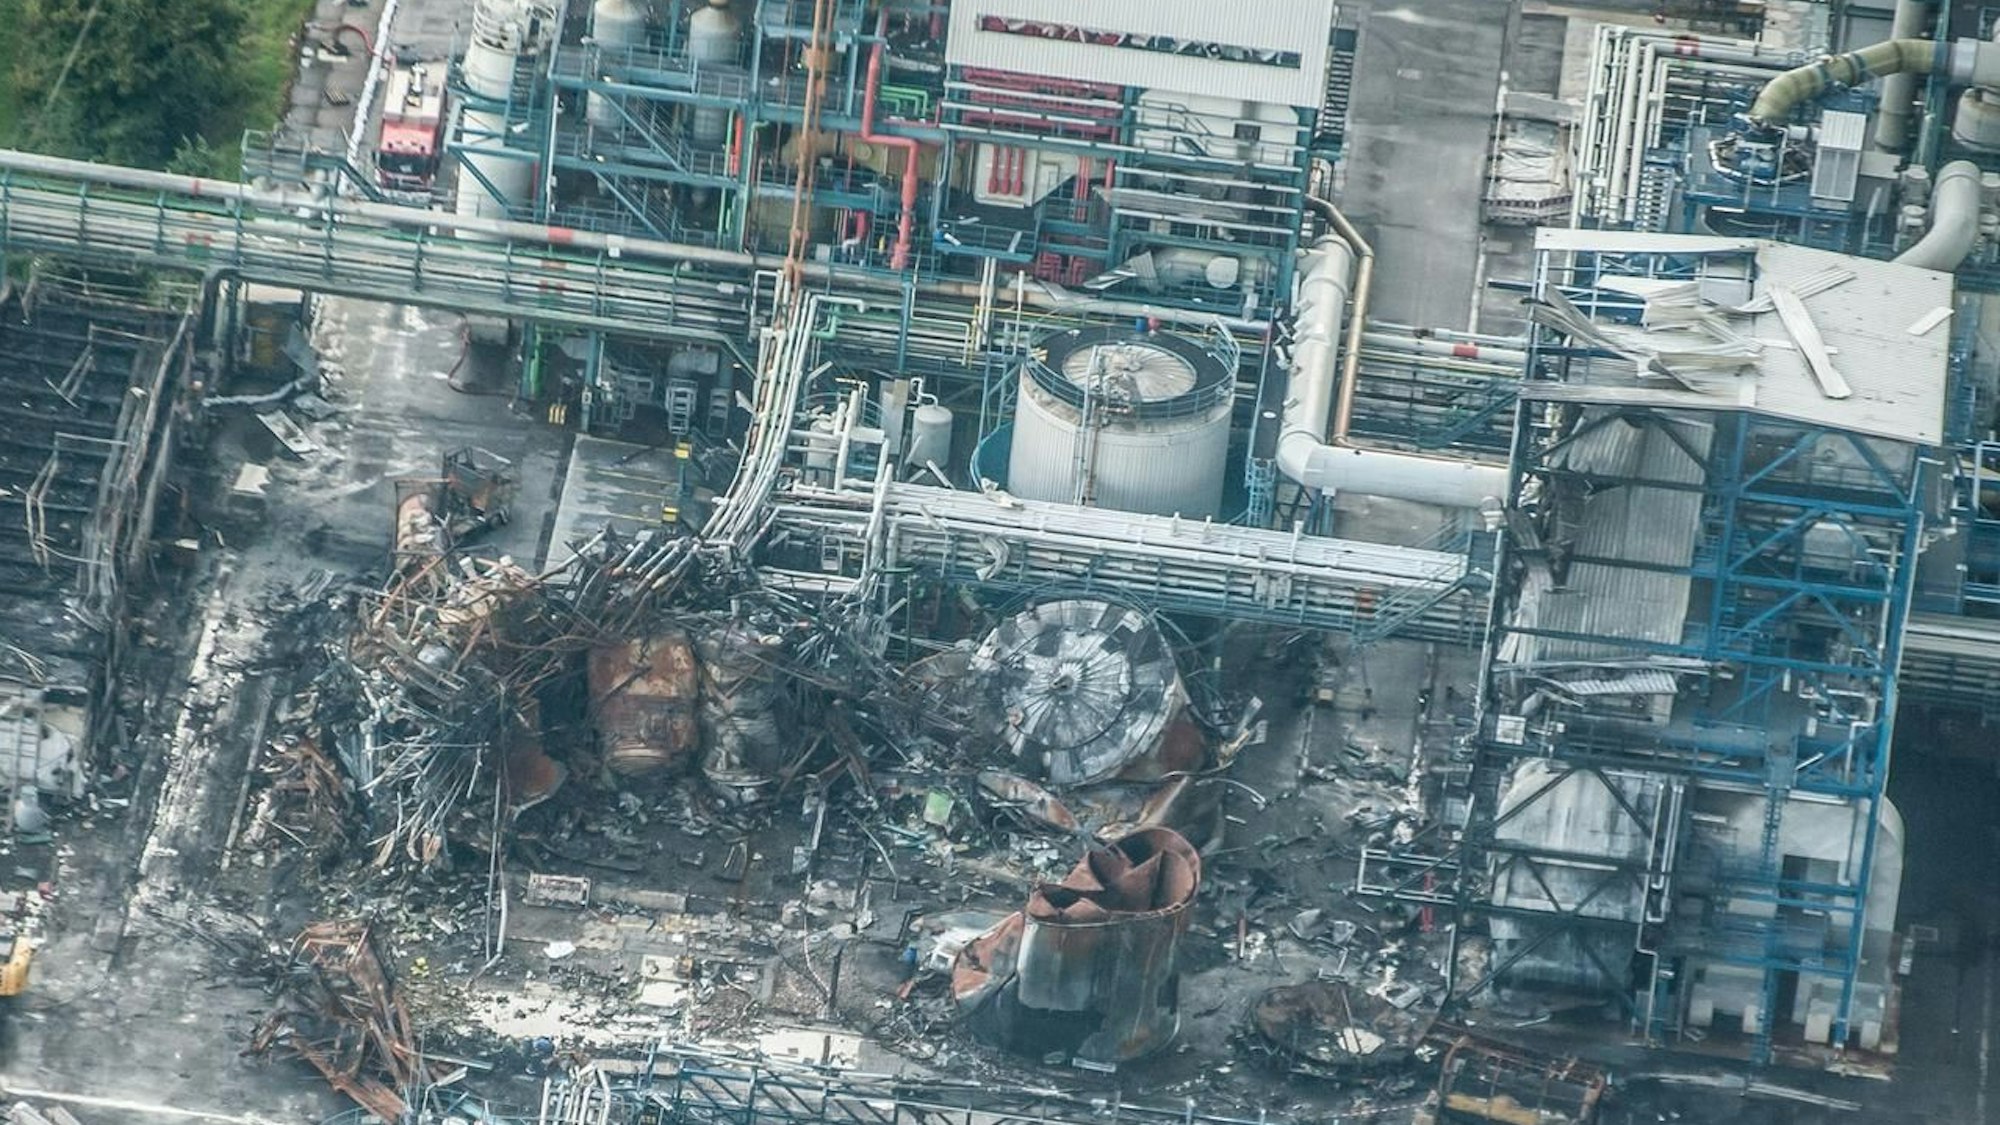 Luftbild des explodierten Tanklagers neben der Sondermüllverbrennungsanlage im Entsorgungszentrum Leverkusen